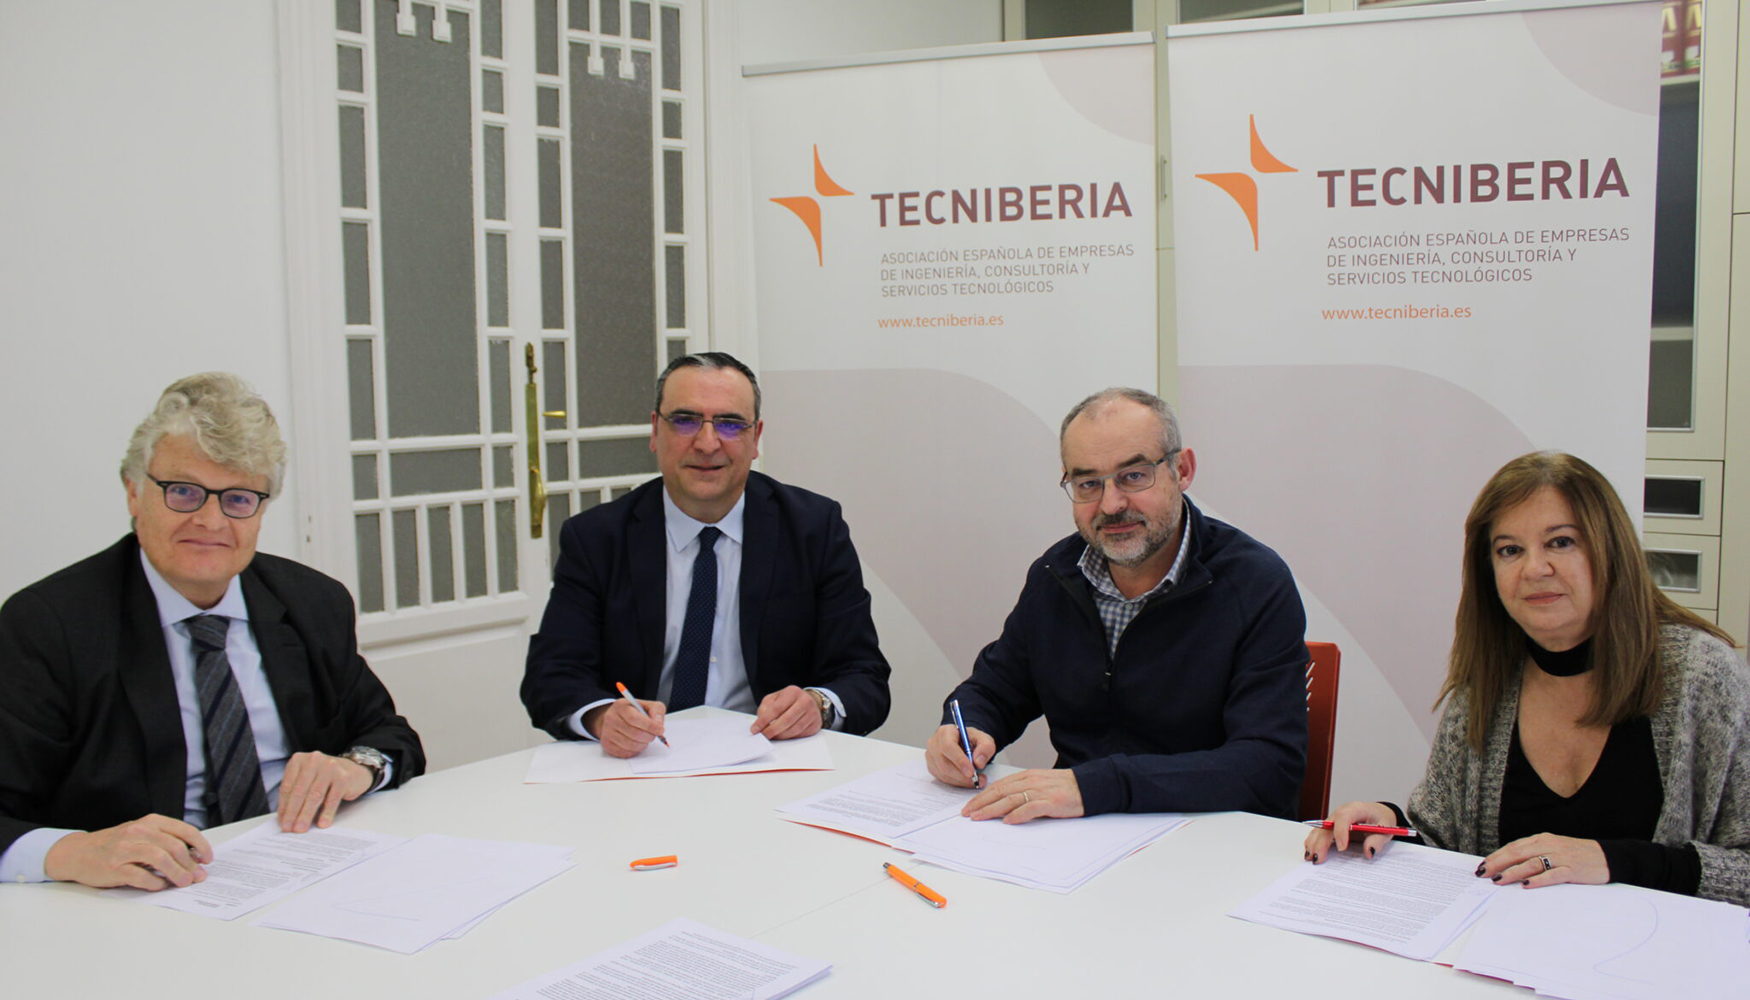 La firma del XX convenio de ingeniera tuvo lugar en la sede de Tecniberia